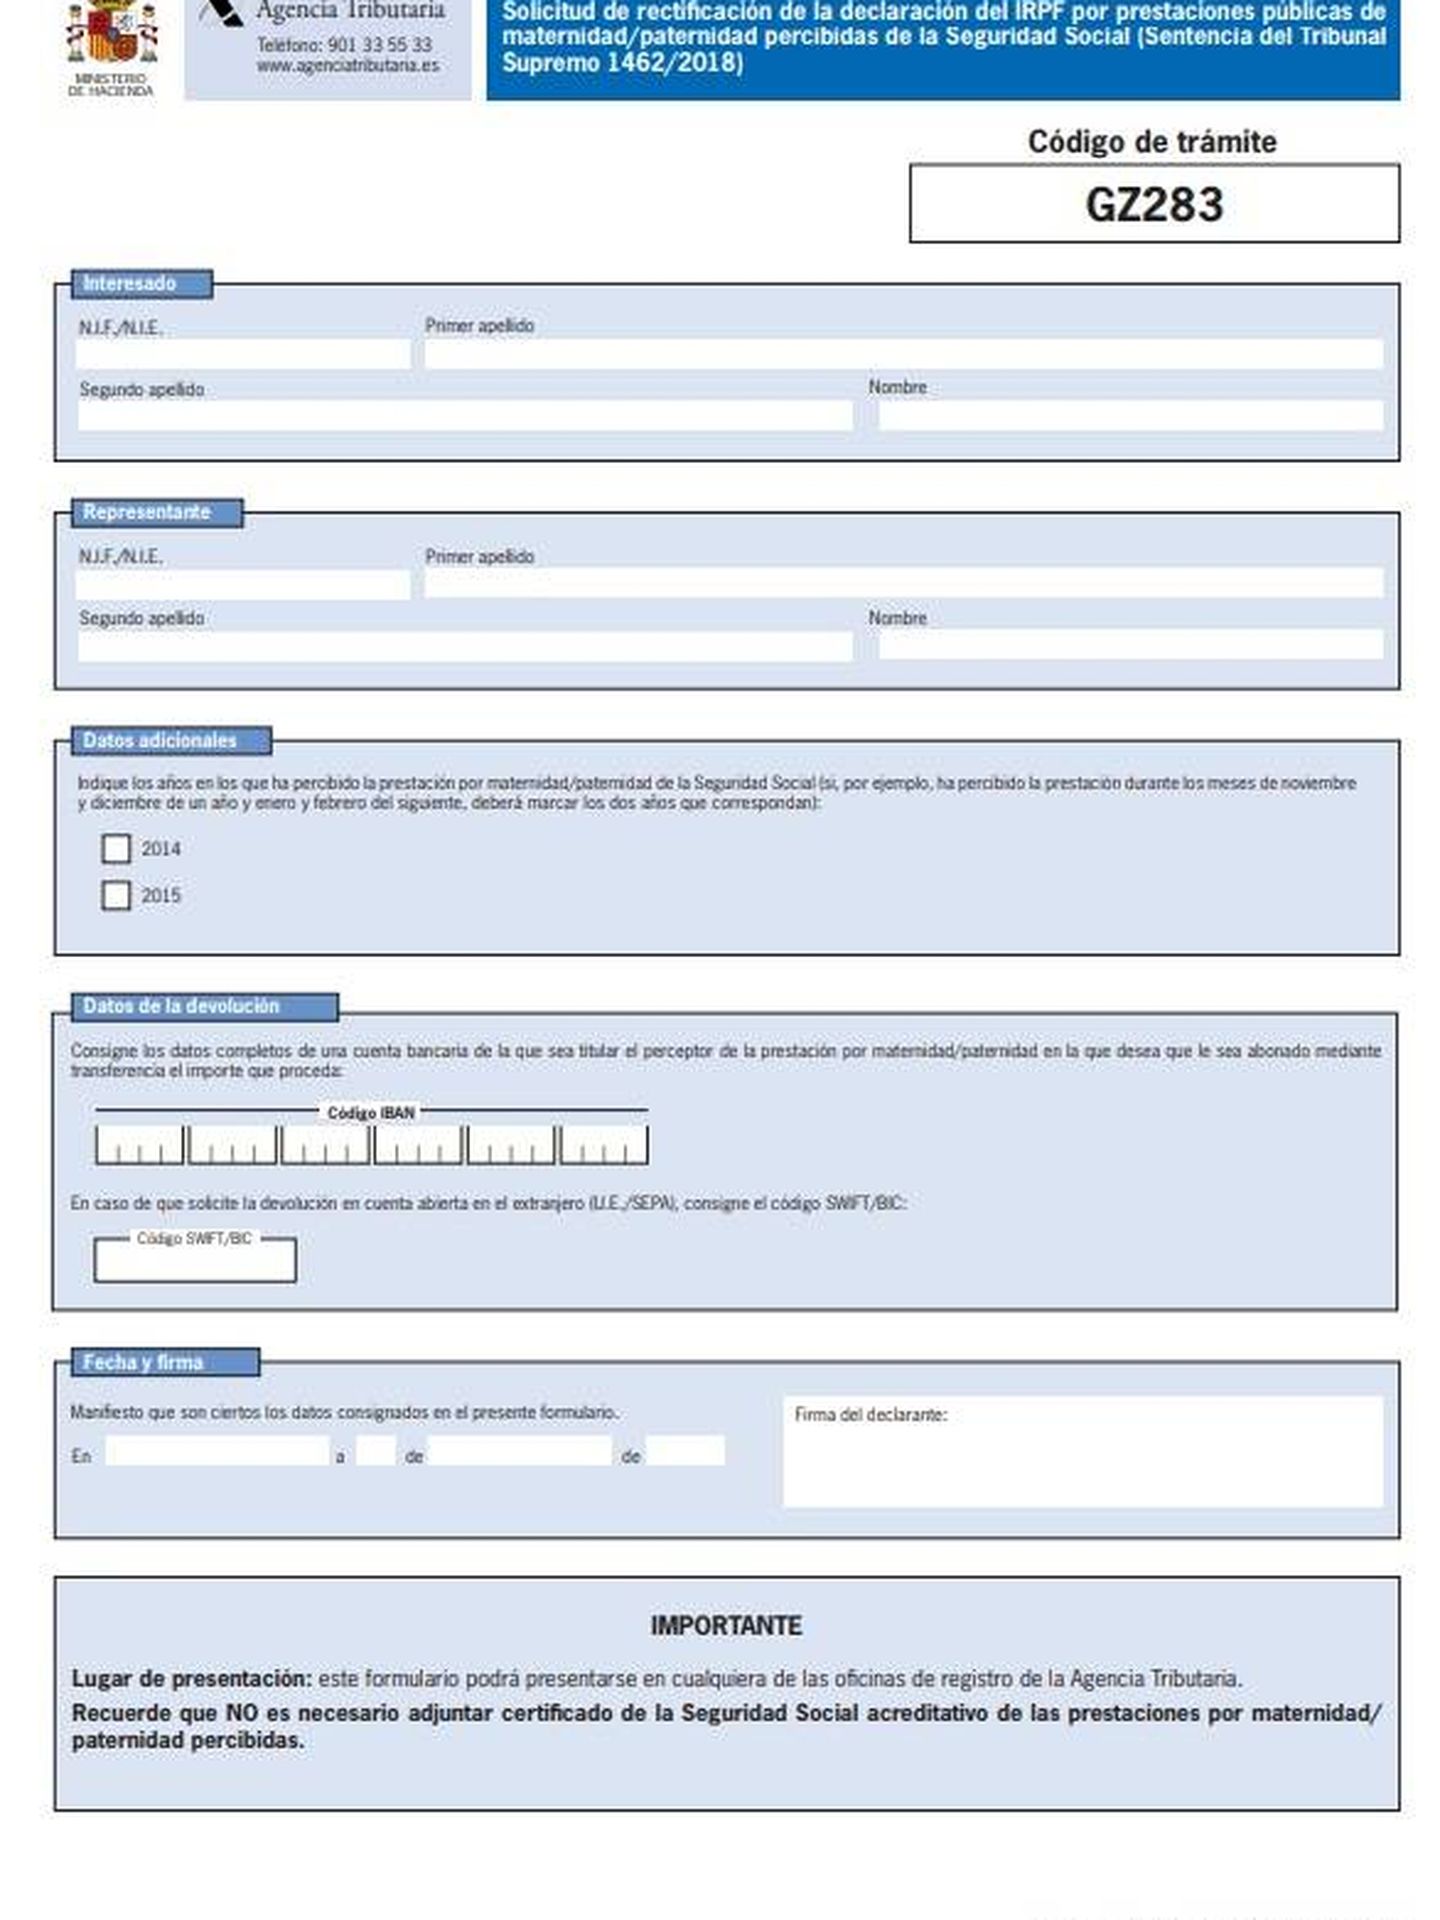 Así es el formulario para la devolución.